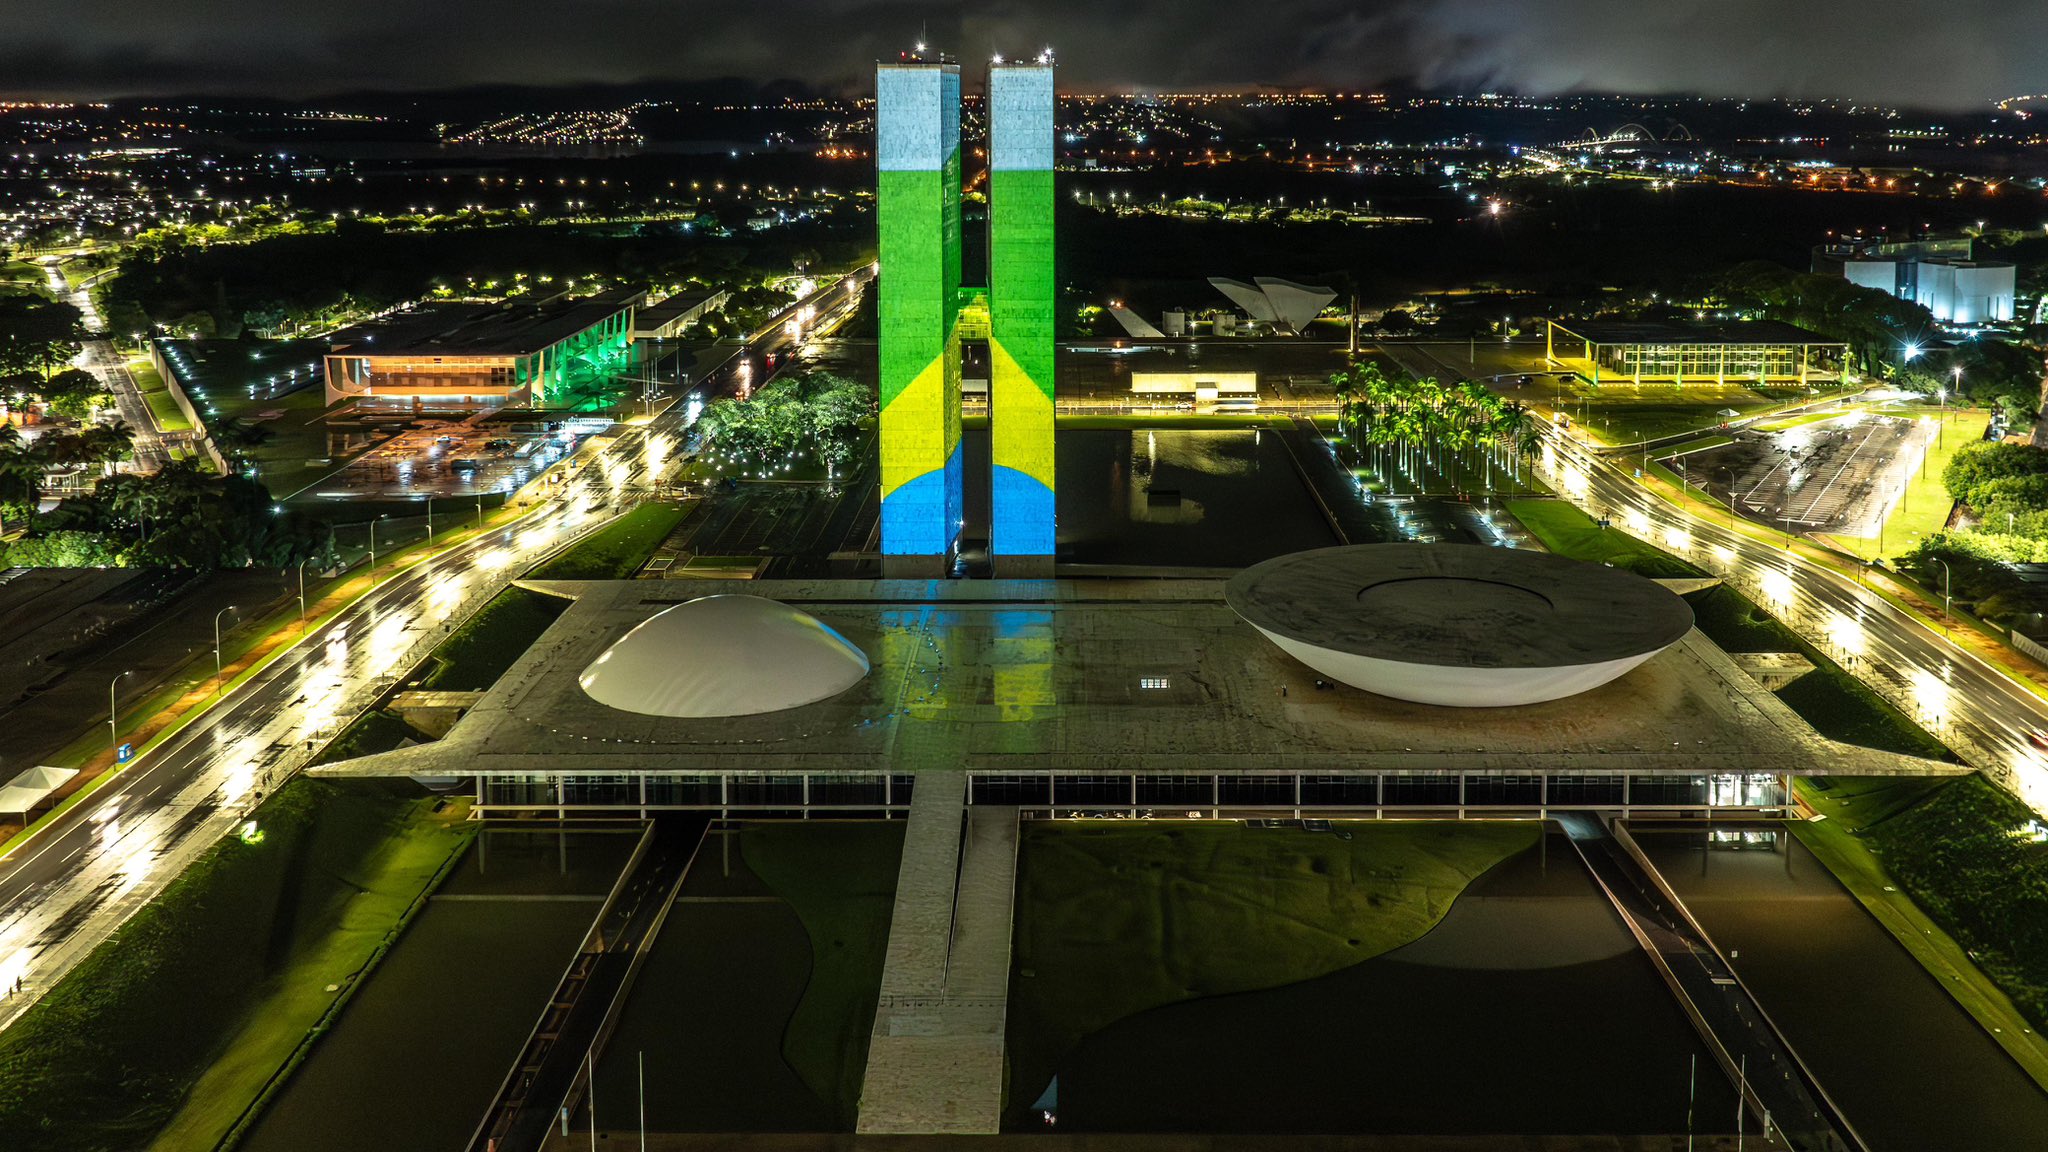 Foto noturna do Eixo Monumental, com foco no Congresso Nacional. Há uma projeção nos prédios do Congresso Nacional com a imagem da bandeira do Brasil.